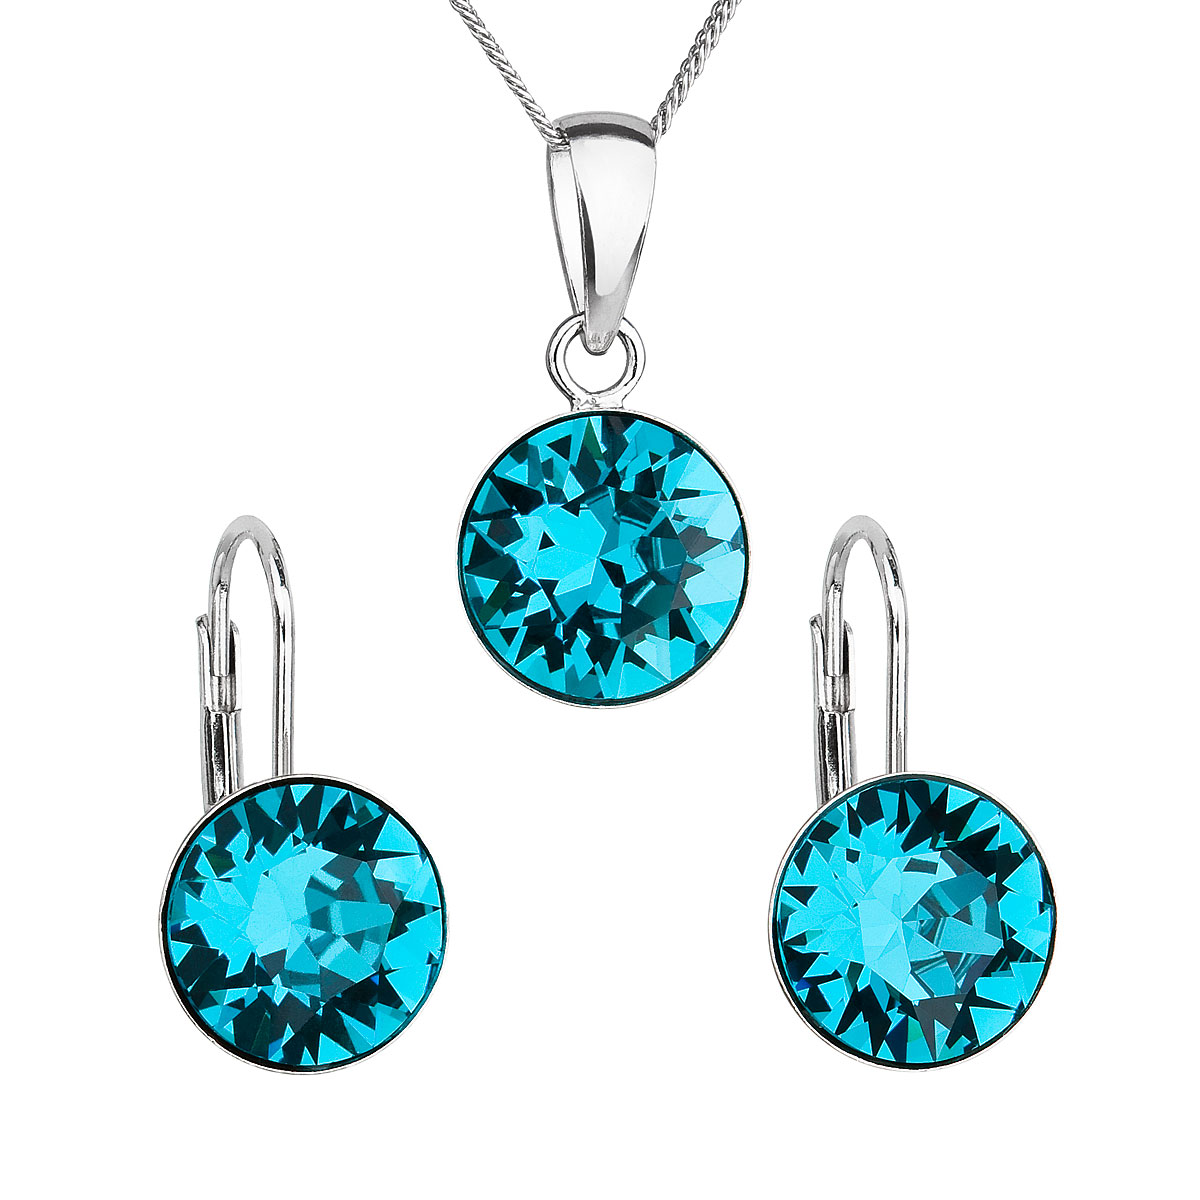 Evolution Group Sada šperků s krystaly Swarovski náušnice, řetízek a přívěsek modré kulaté 39140.3 blue zircon